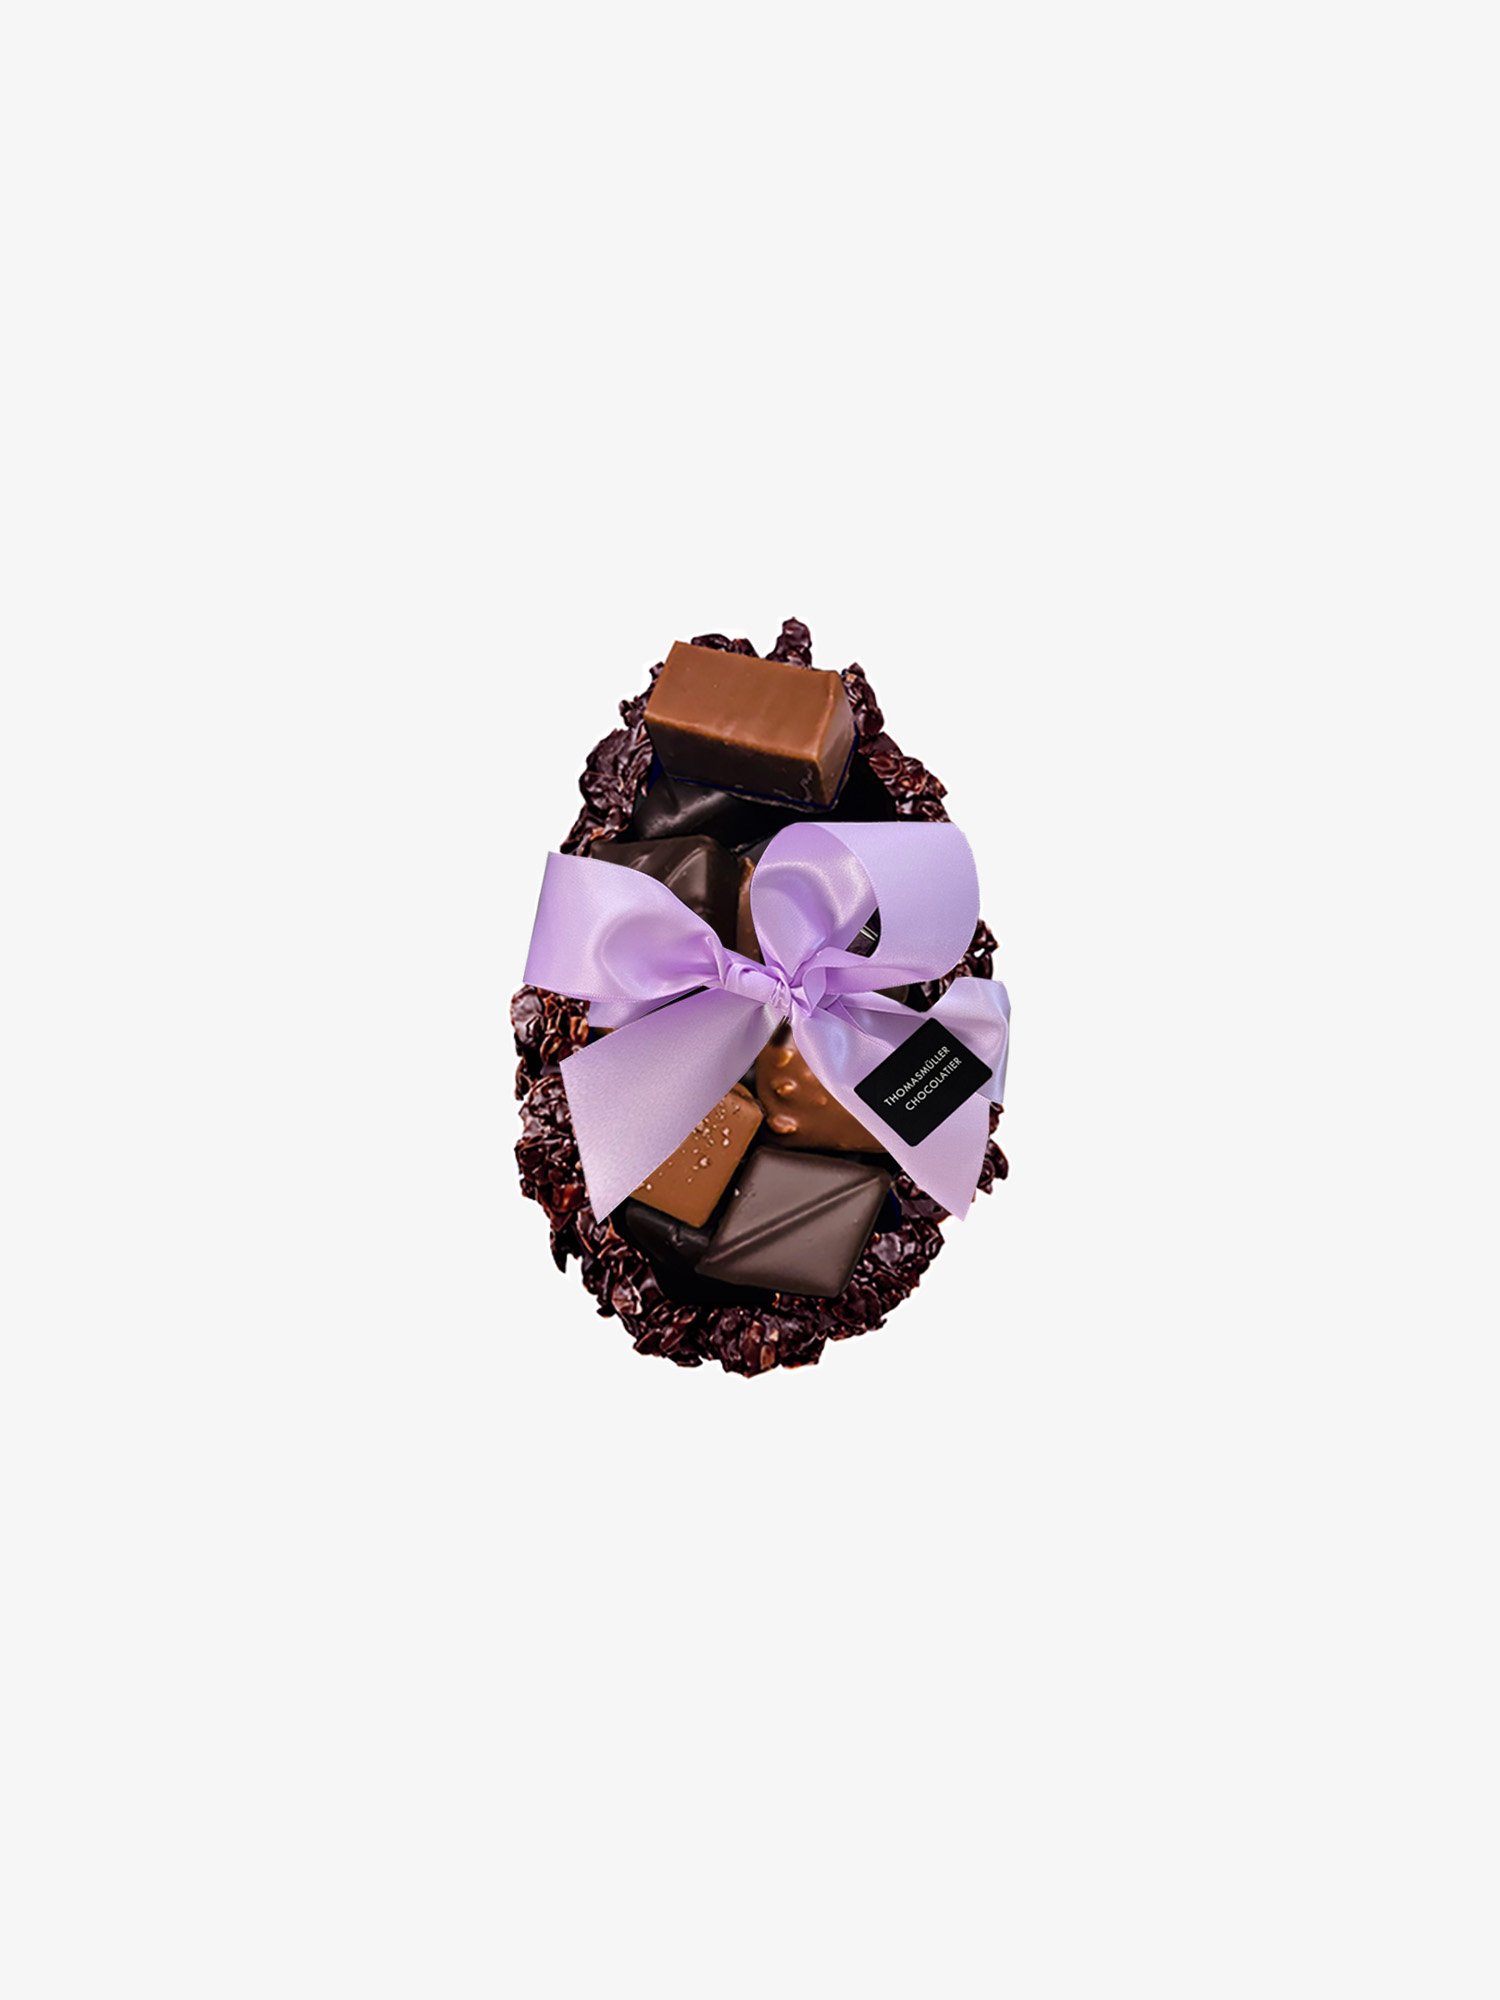 Osterei Rocher aus dunkler Schokolade von Chocolatier Thomas Müller